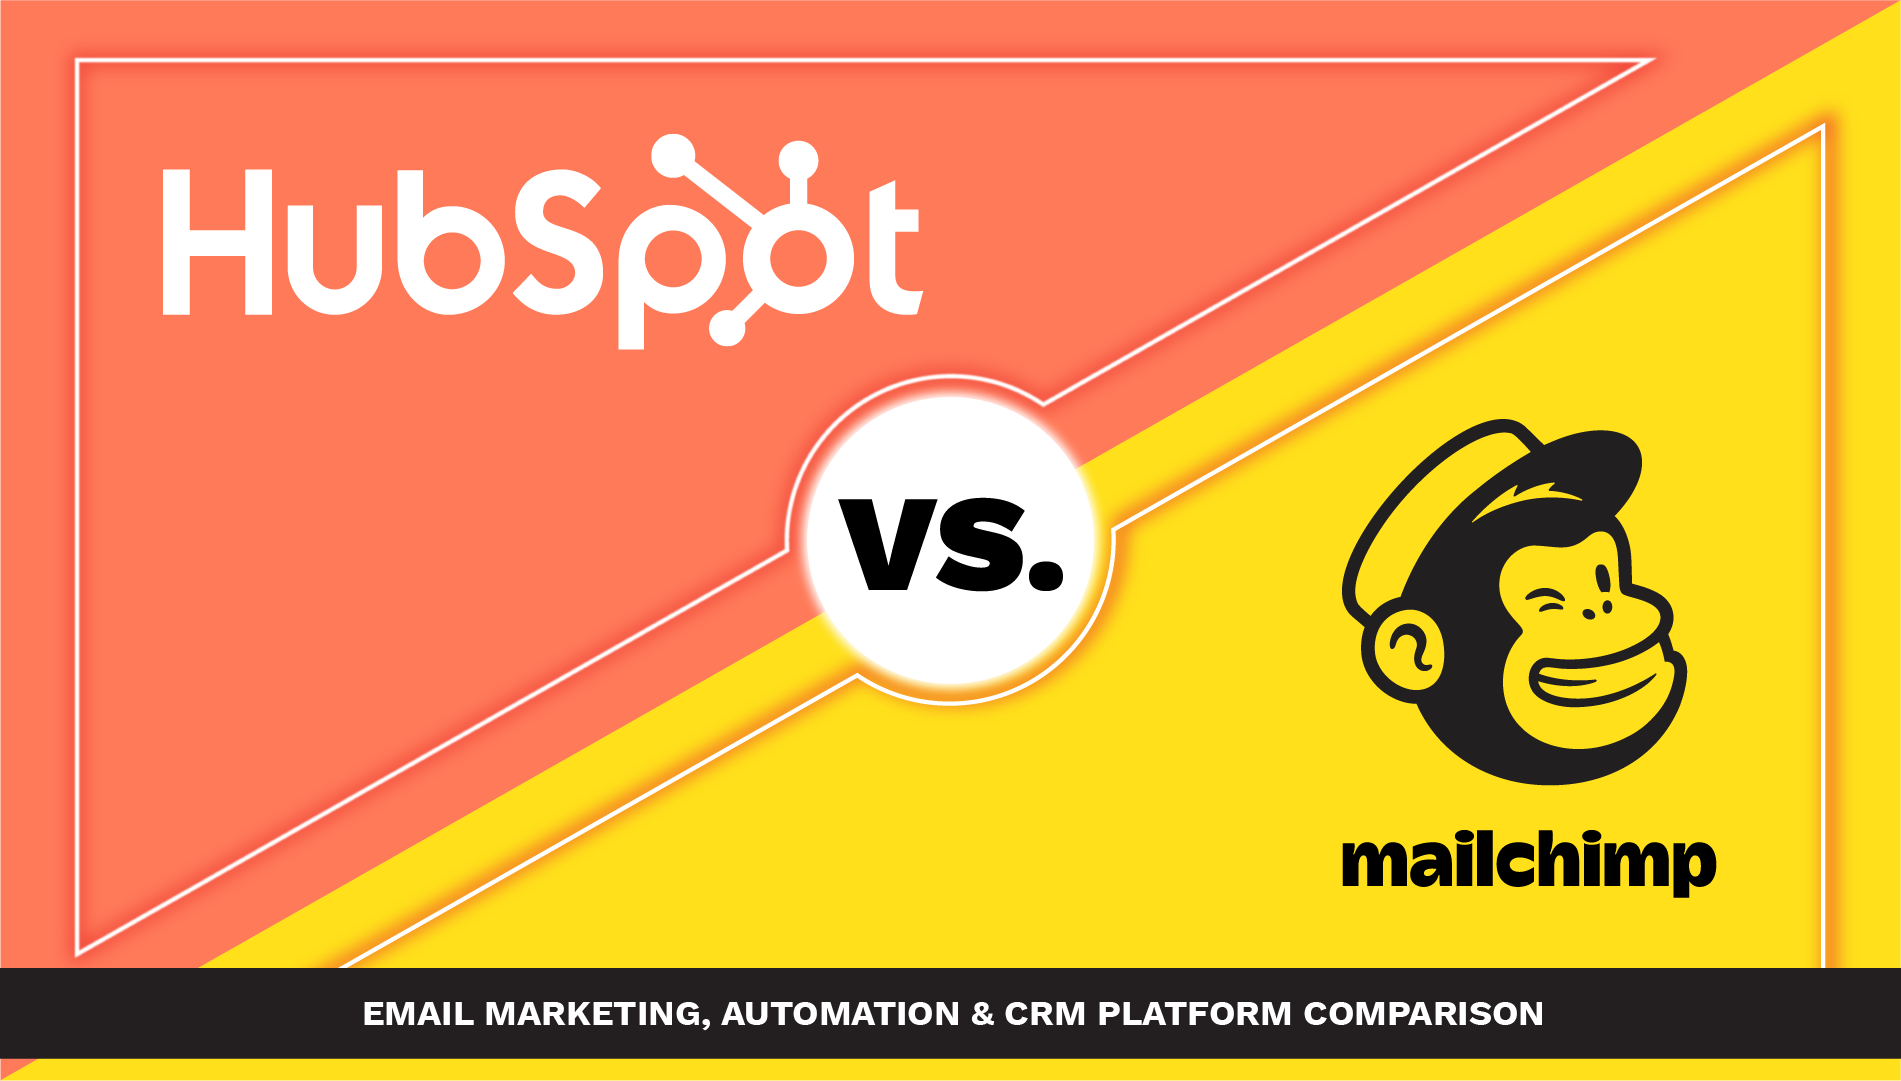 HubSpot vs. Mailchimp - Email Marketing, Automation & CRM Comparison